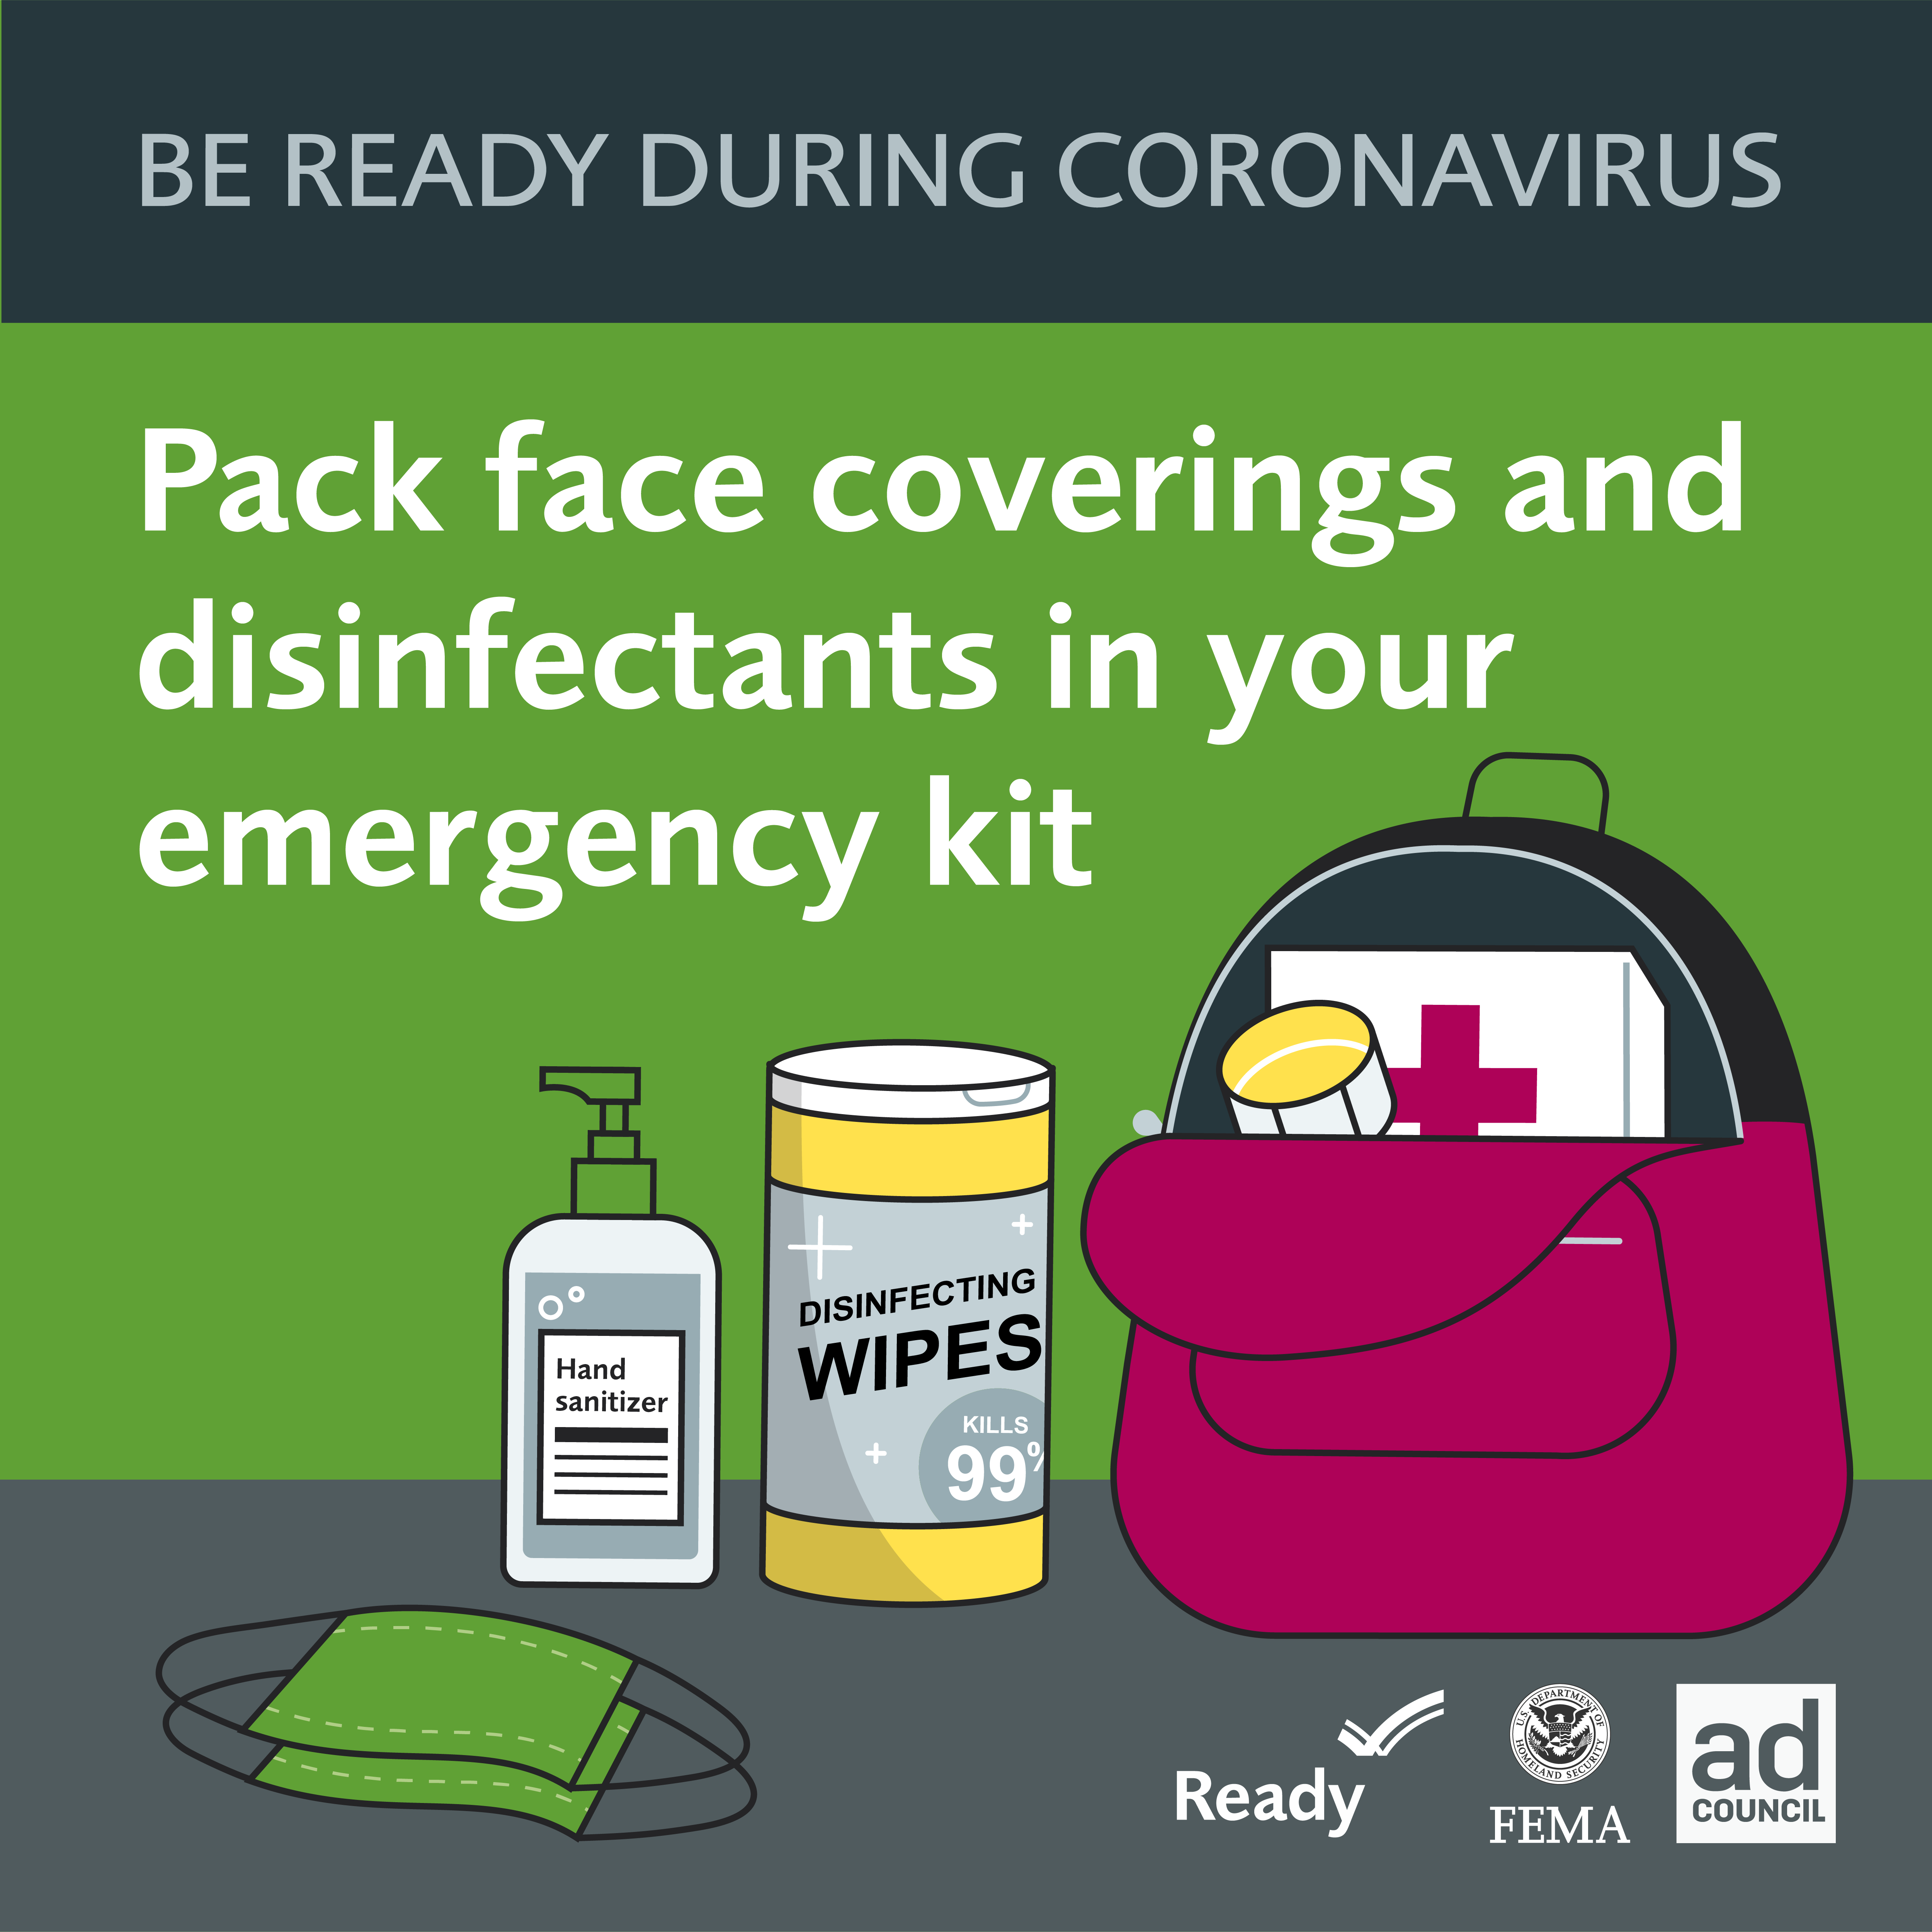 Be Ready During Coronavirus Toolkit graphic